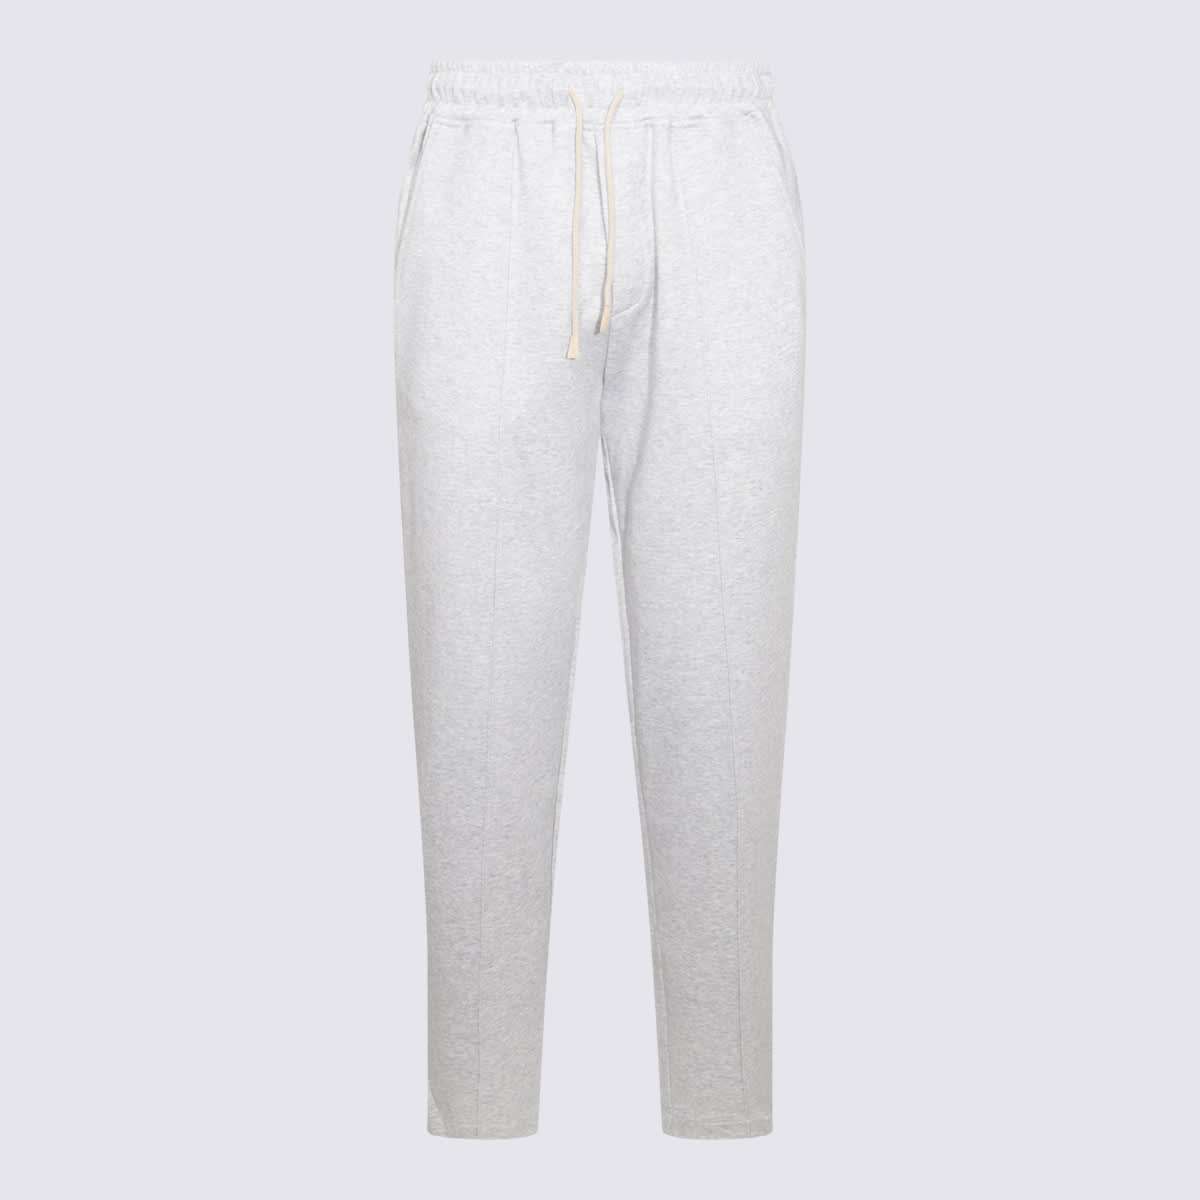 Grey Cotton Pants